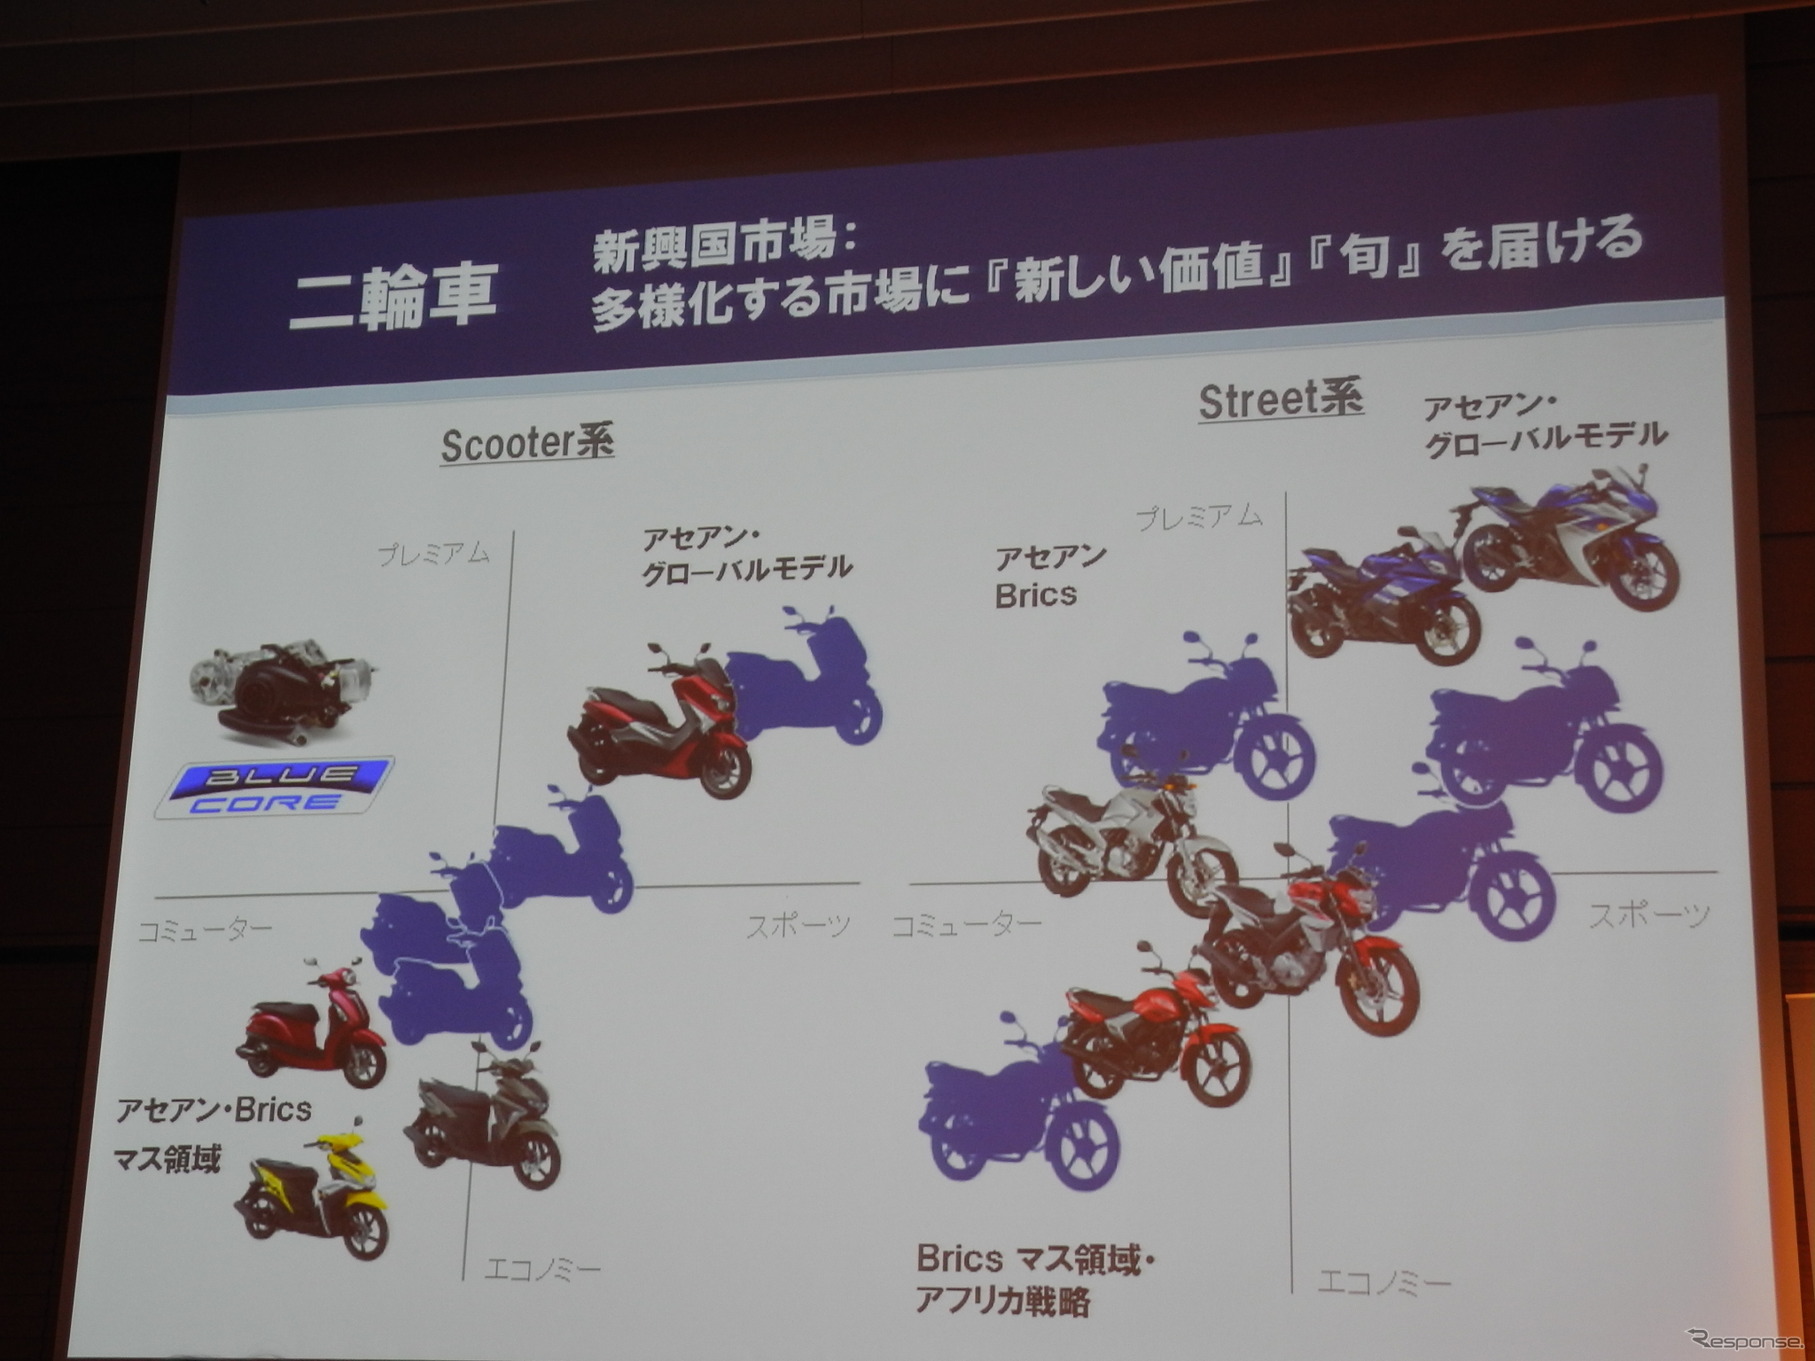 新中期経営計画の説明会で映し出された二輪車事業のスライド